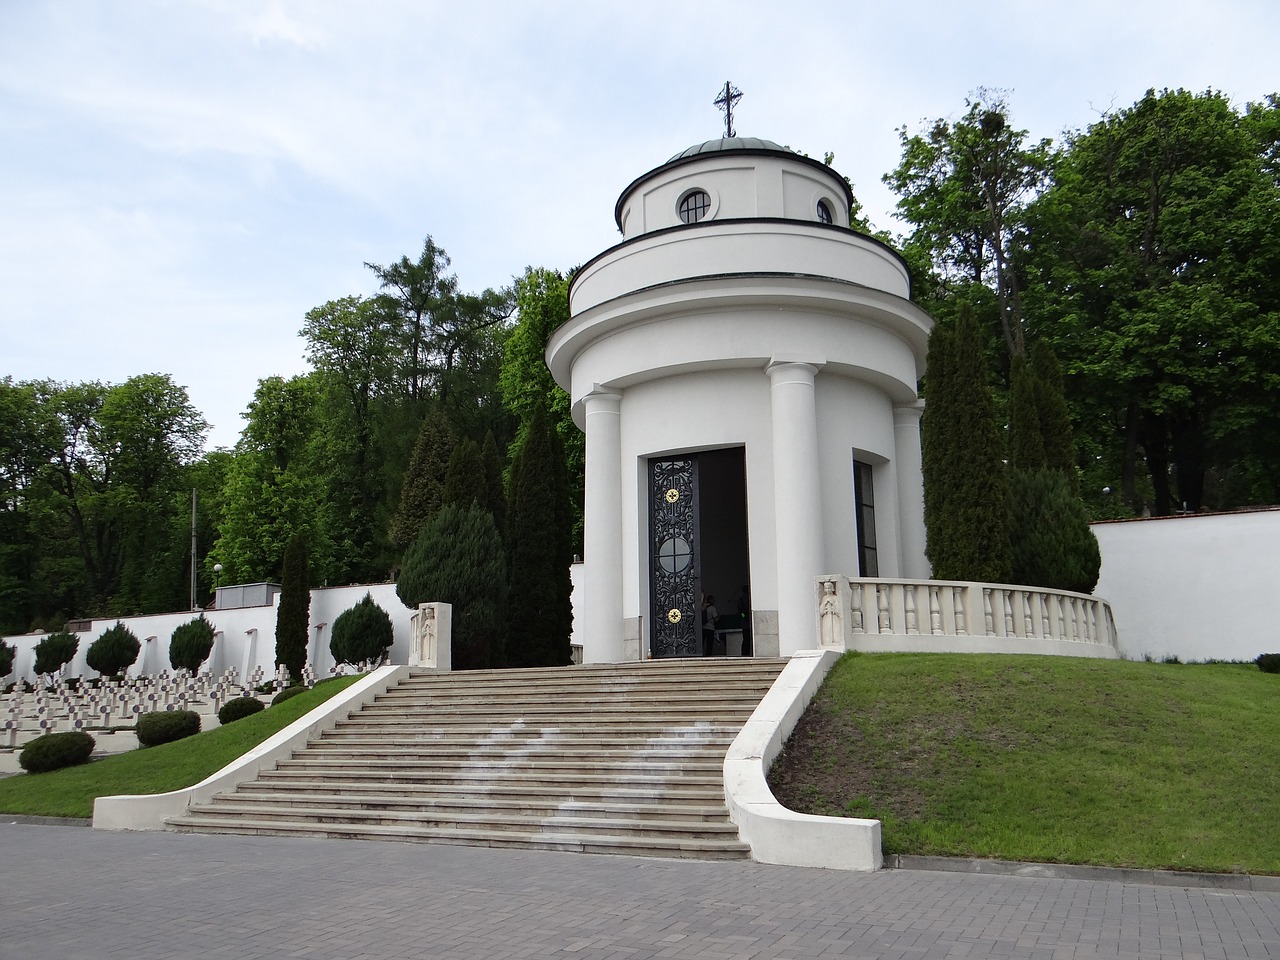 Popularne cmentarze polskie na świecie